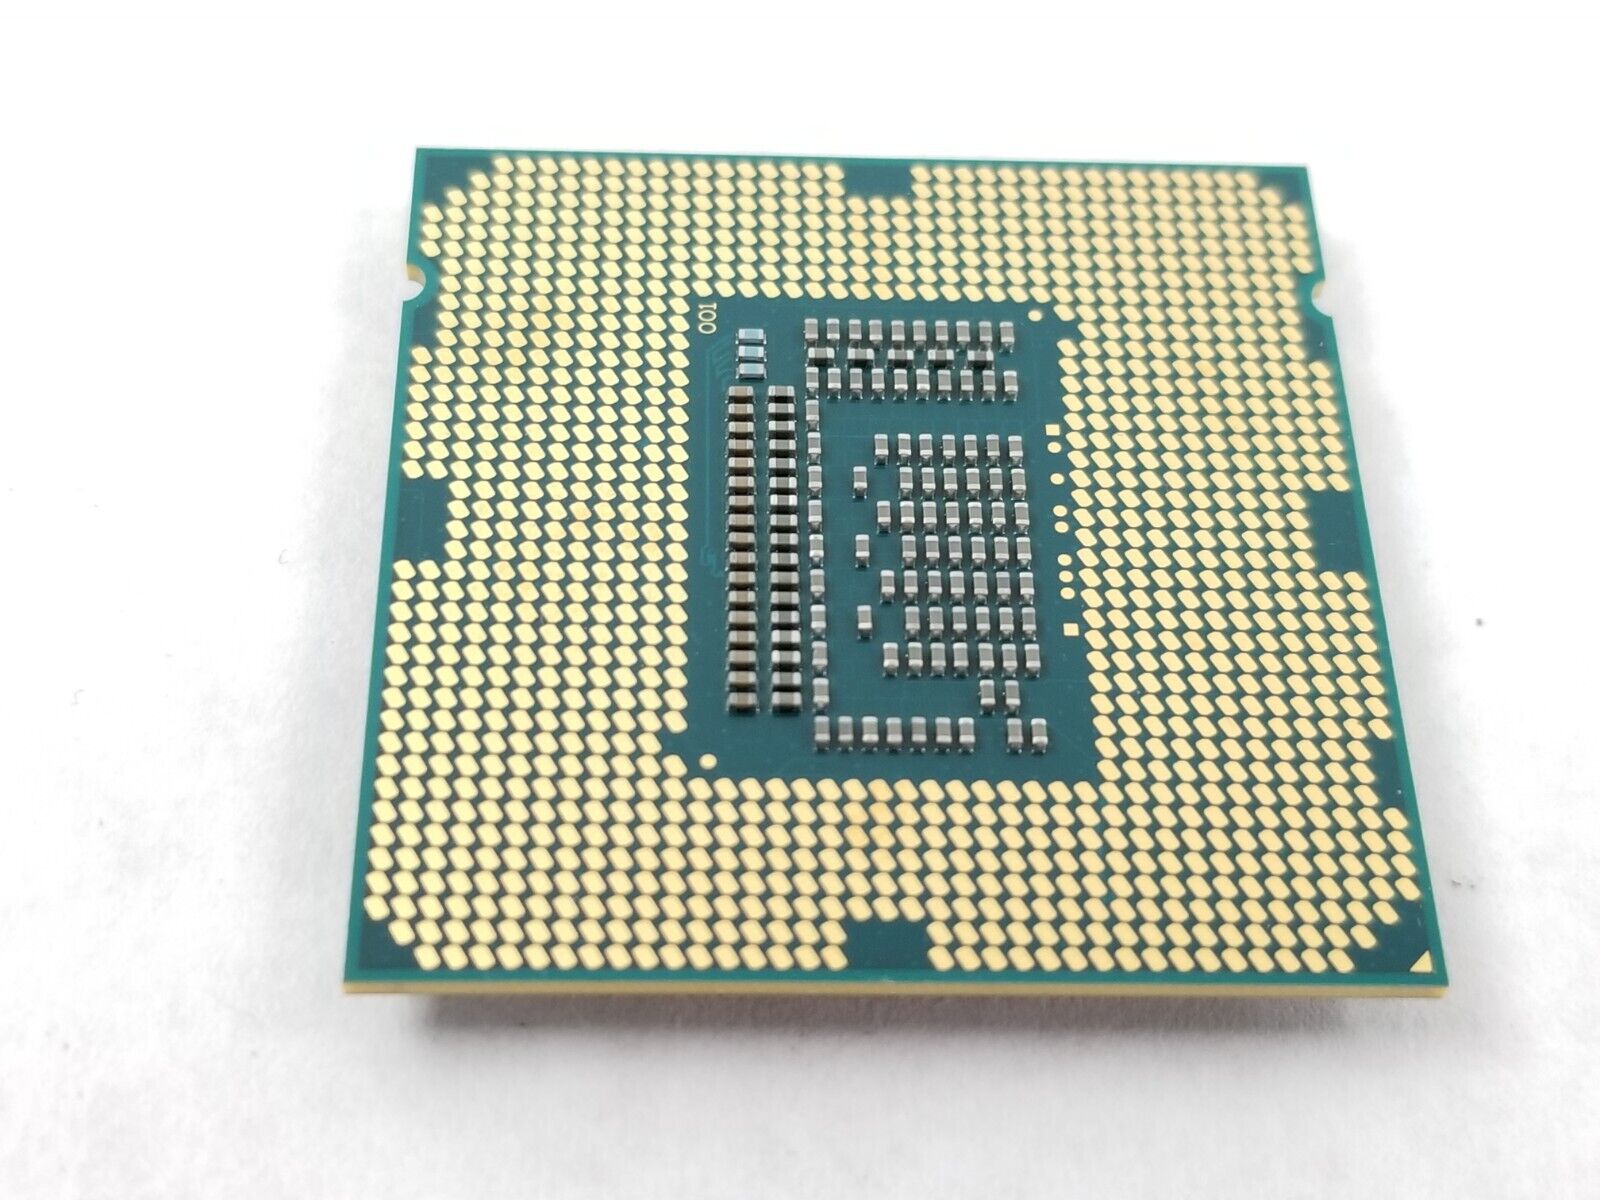 Intel Core i5-3475S SR0PP 2.90GHz Quad Core 6MB LGA1155 Processor CPU